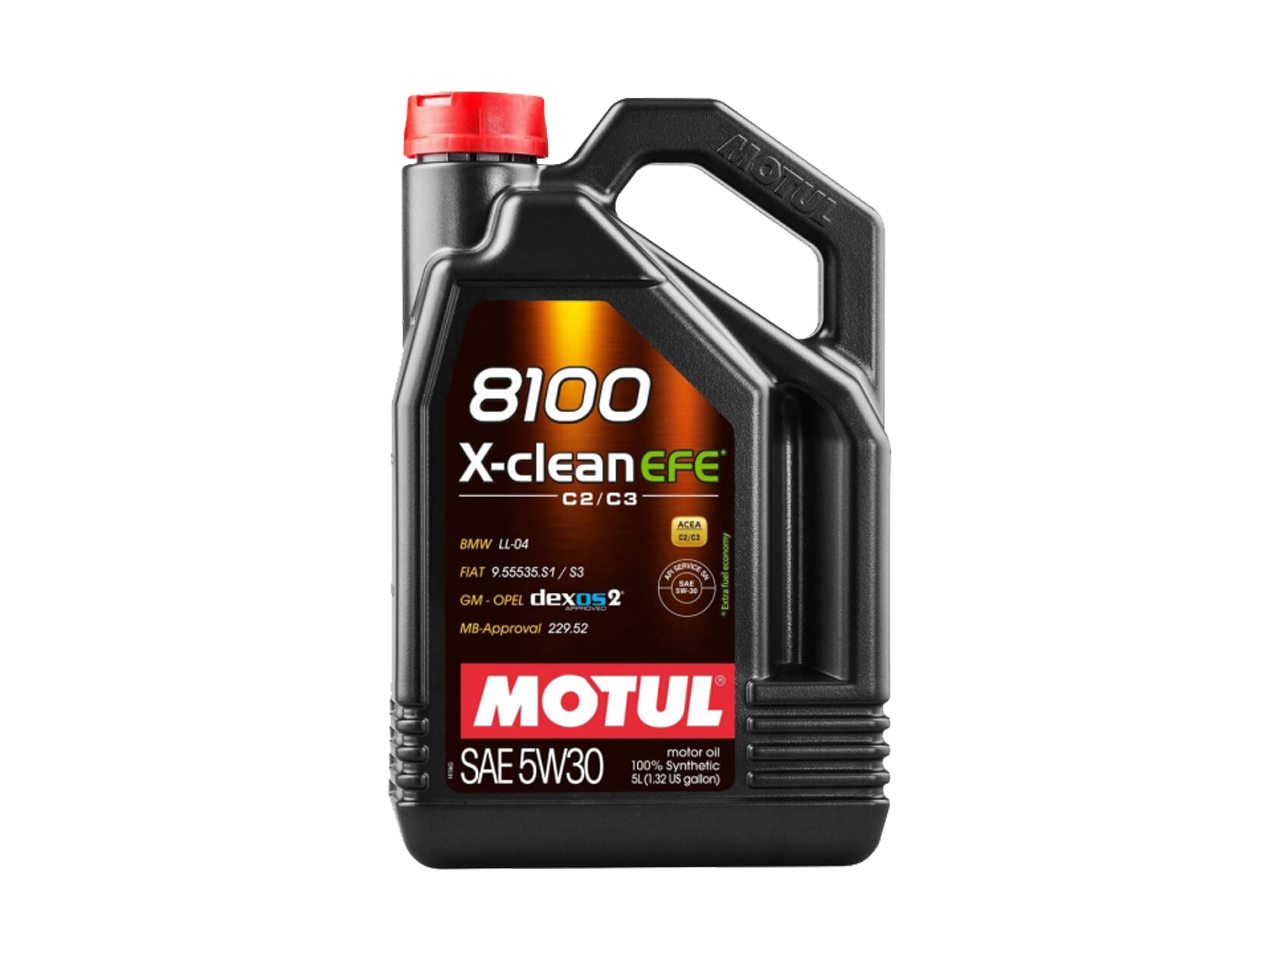 Купить недорого Моторное масло Motul 8100 X-clean EFE в Москве